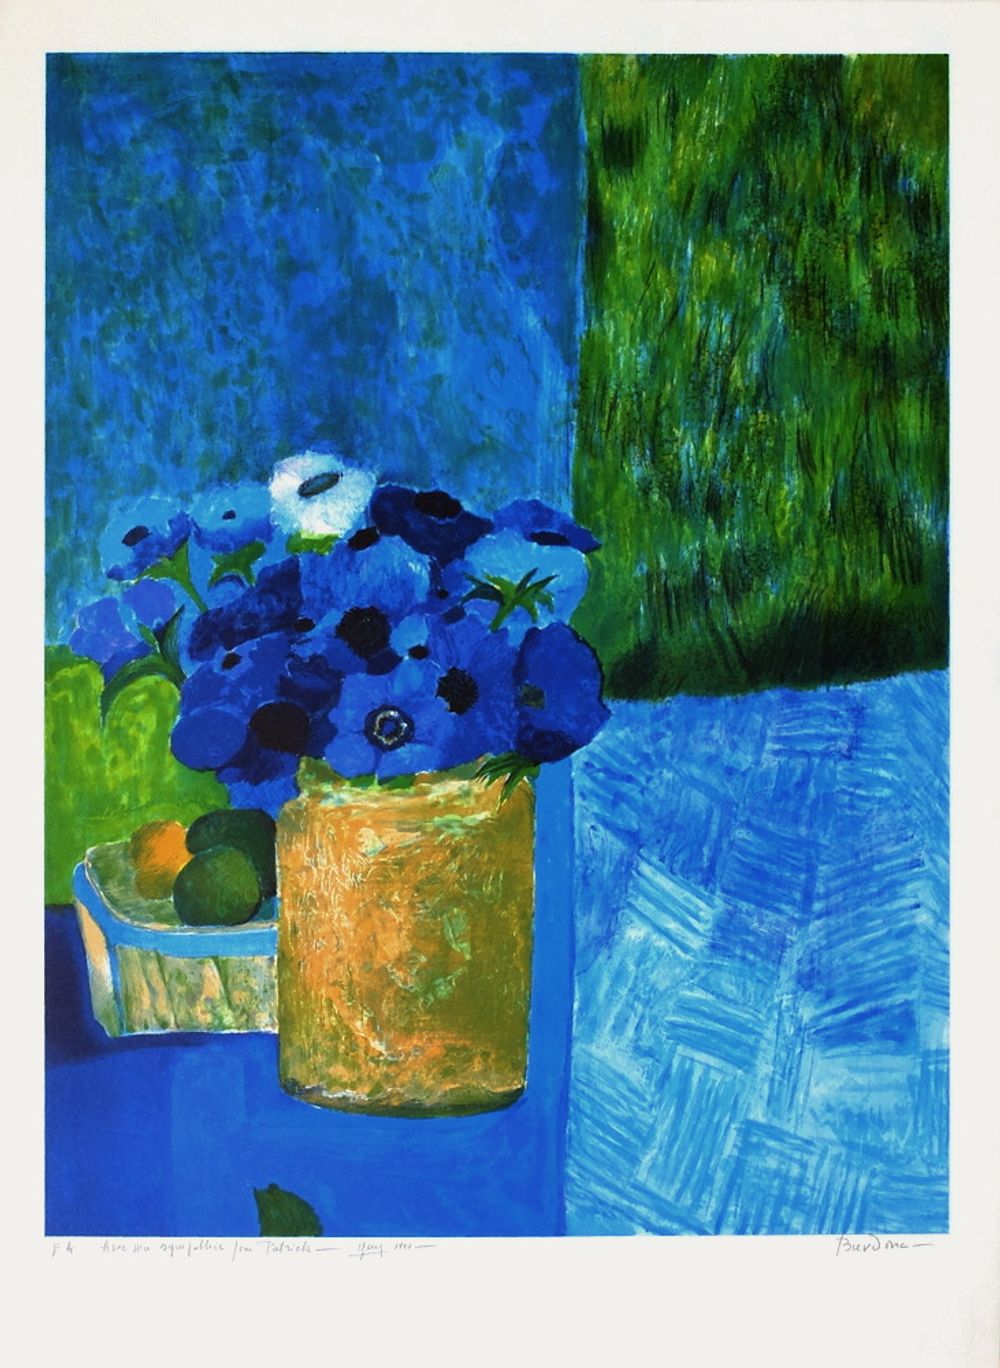 Bouquet bleu